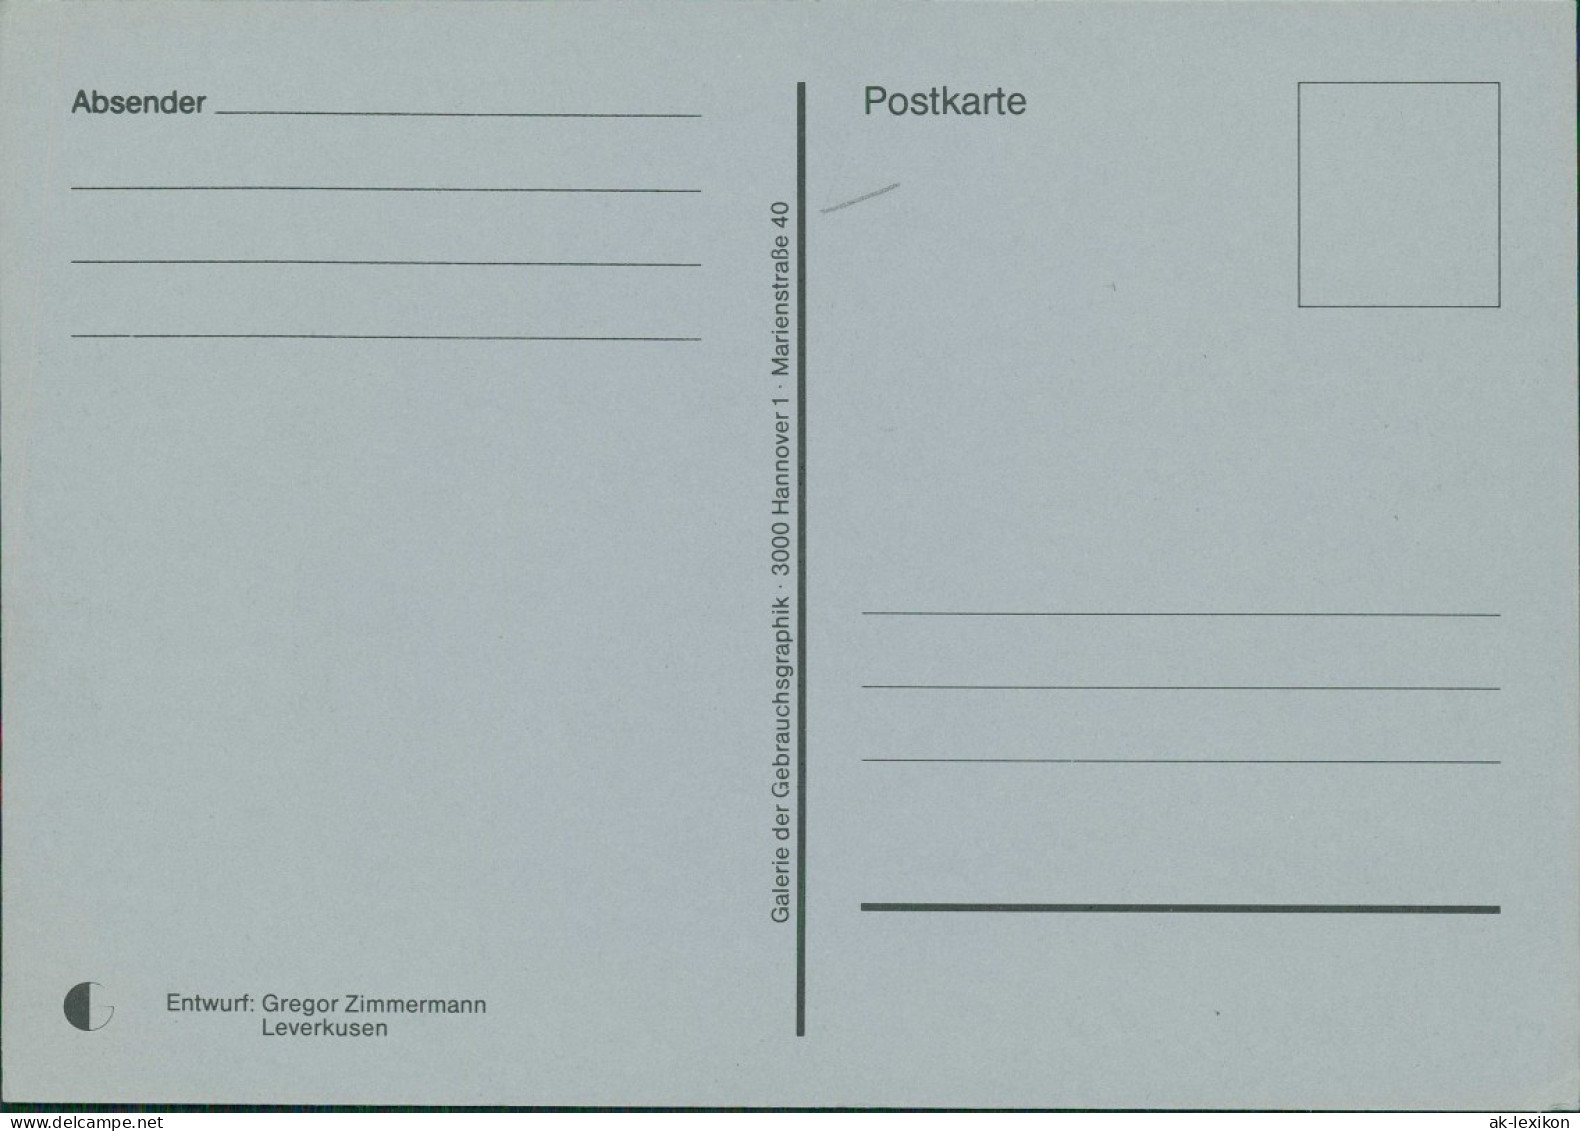 Ansichtskarte  Internationaler Postkartenmarkt Frankfurt 2000 - Zeitgenössisch (ab 1950)